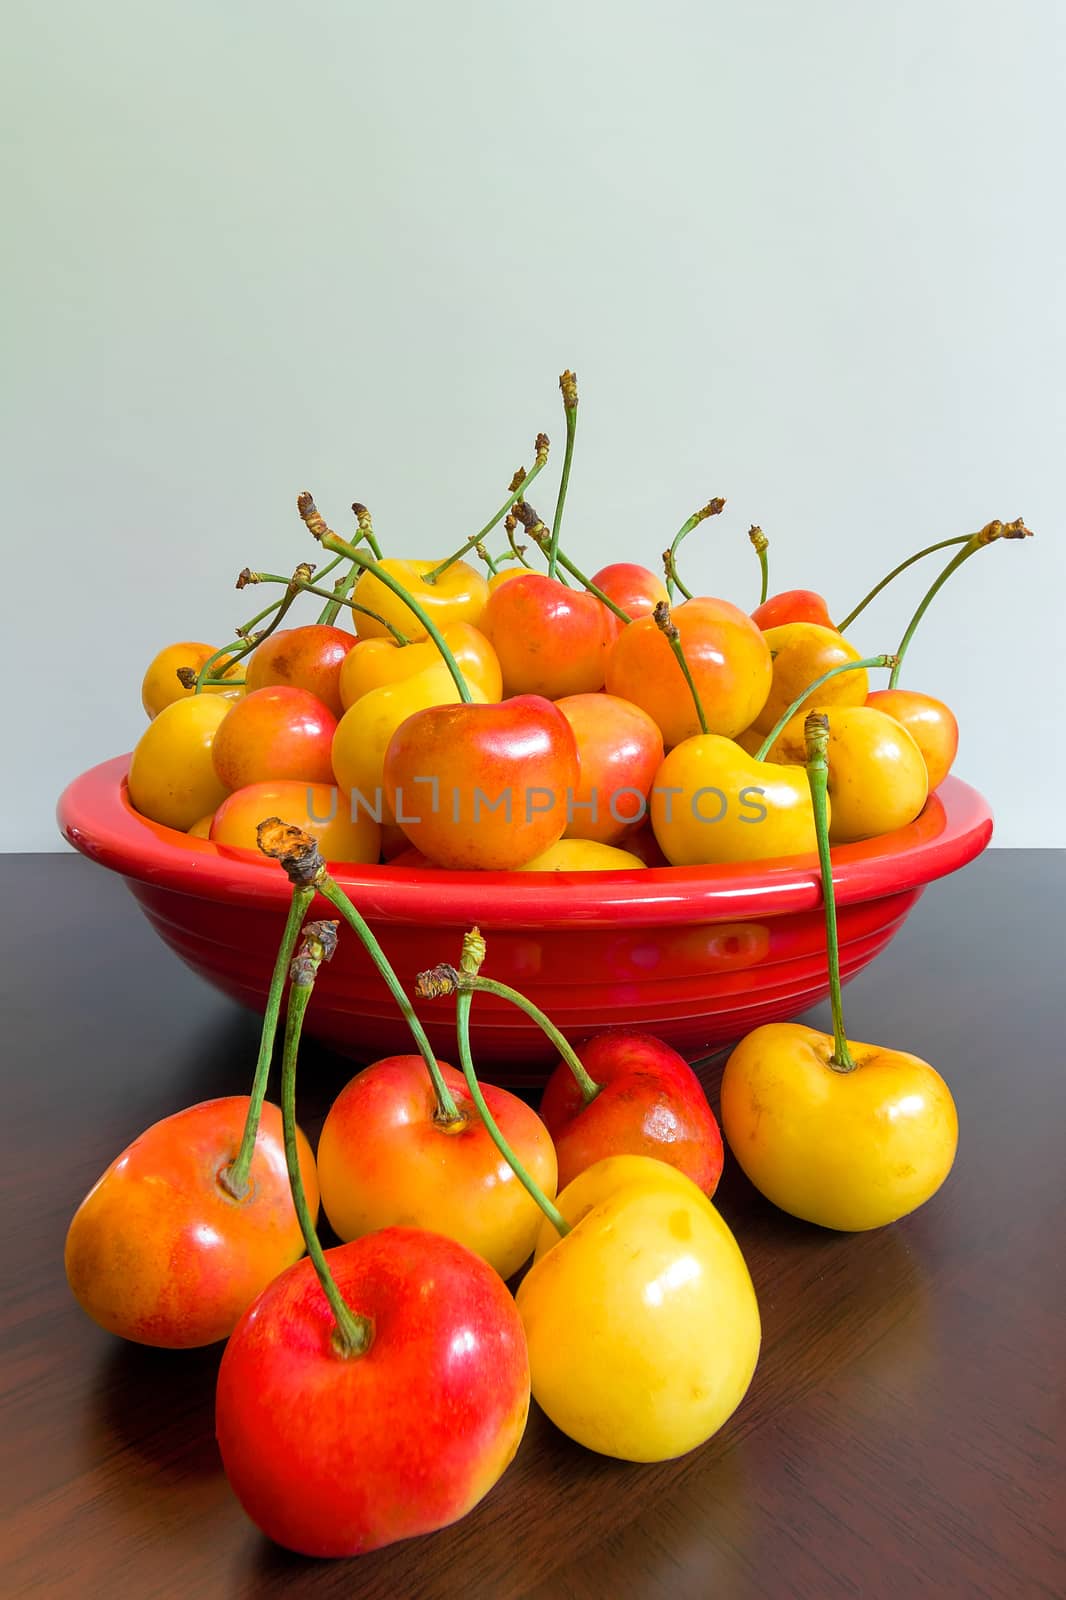 Bowl of Rainier Cherries by jpldesigns